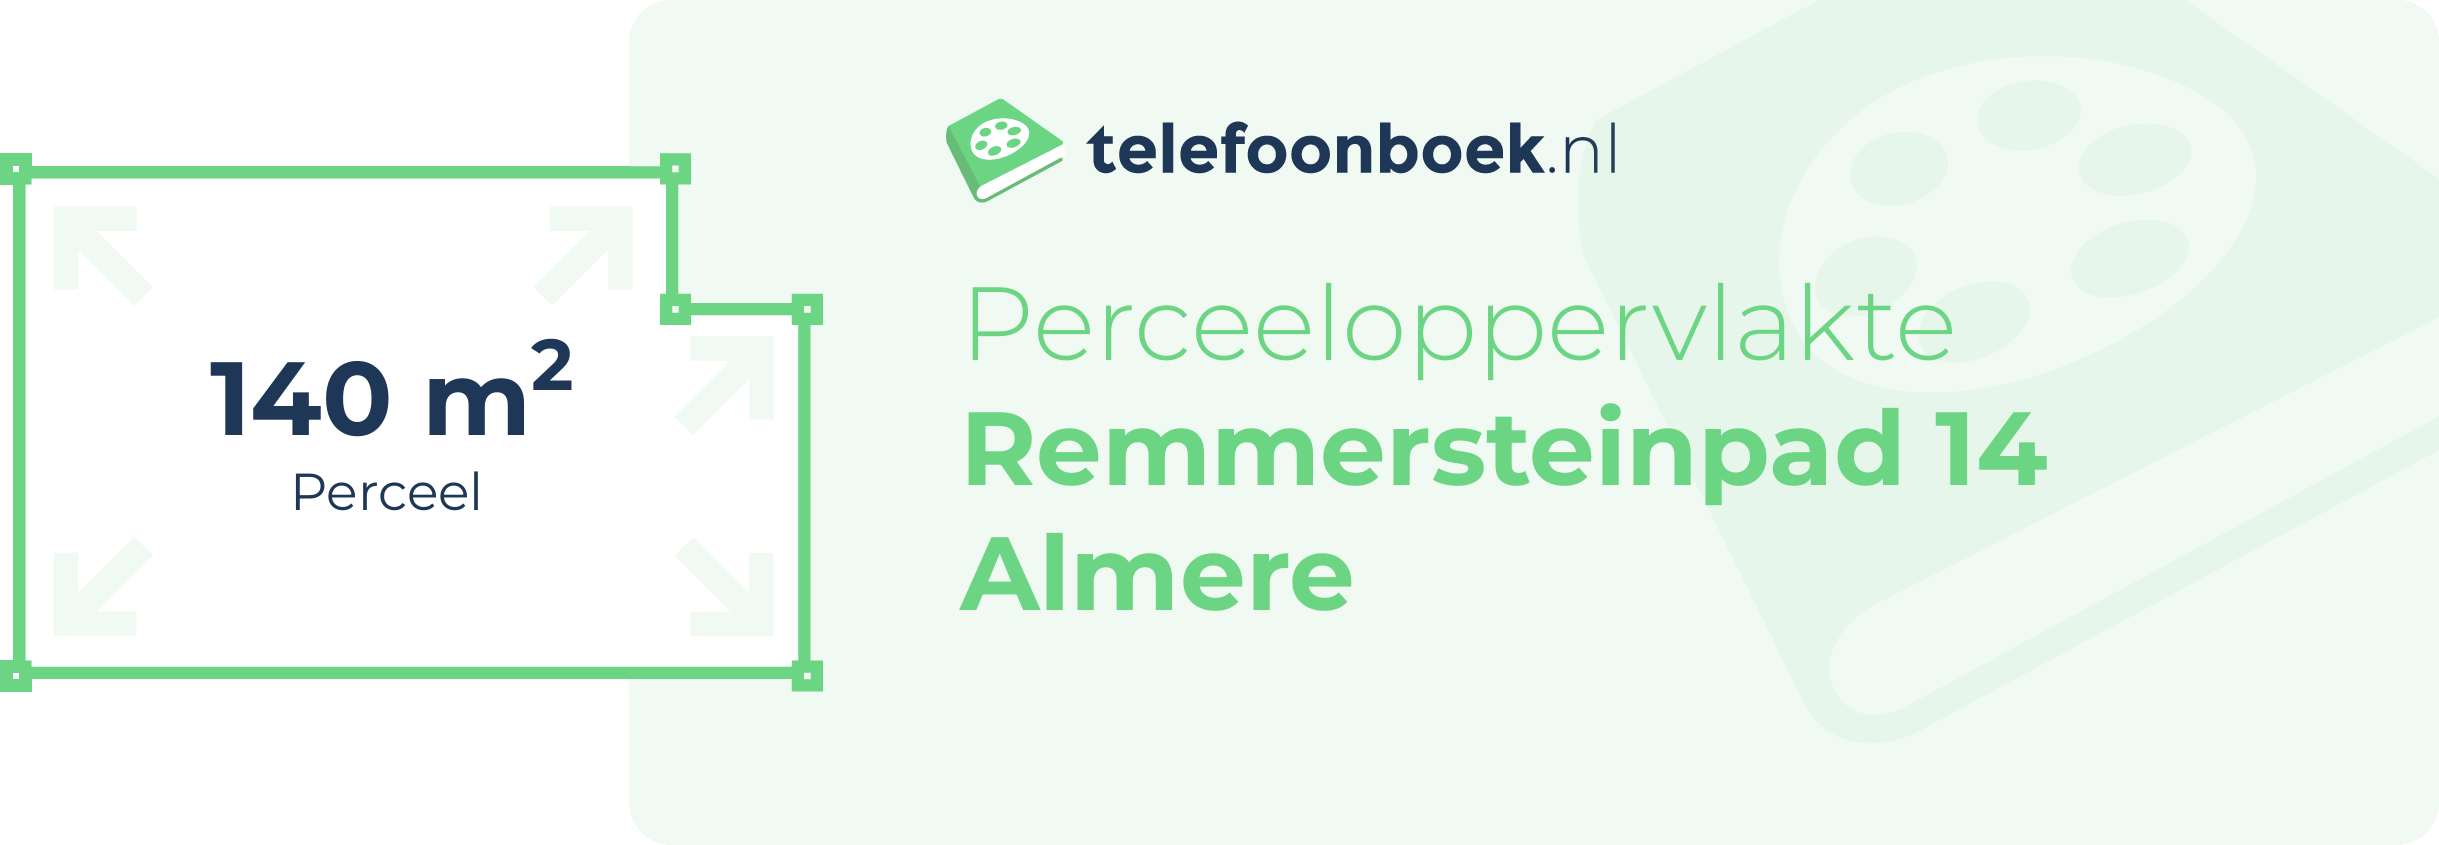 Perceeloppervlakte Remmersteinpad 14 Almere